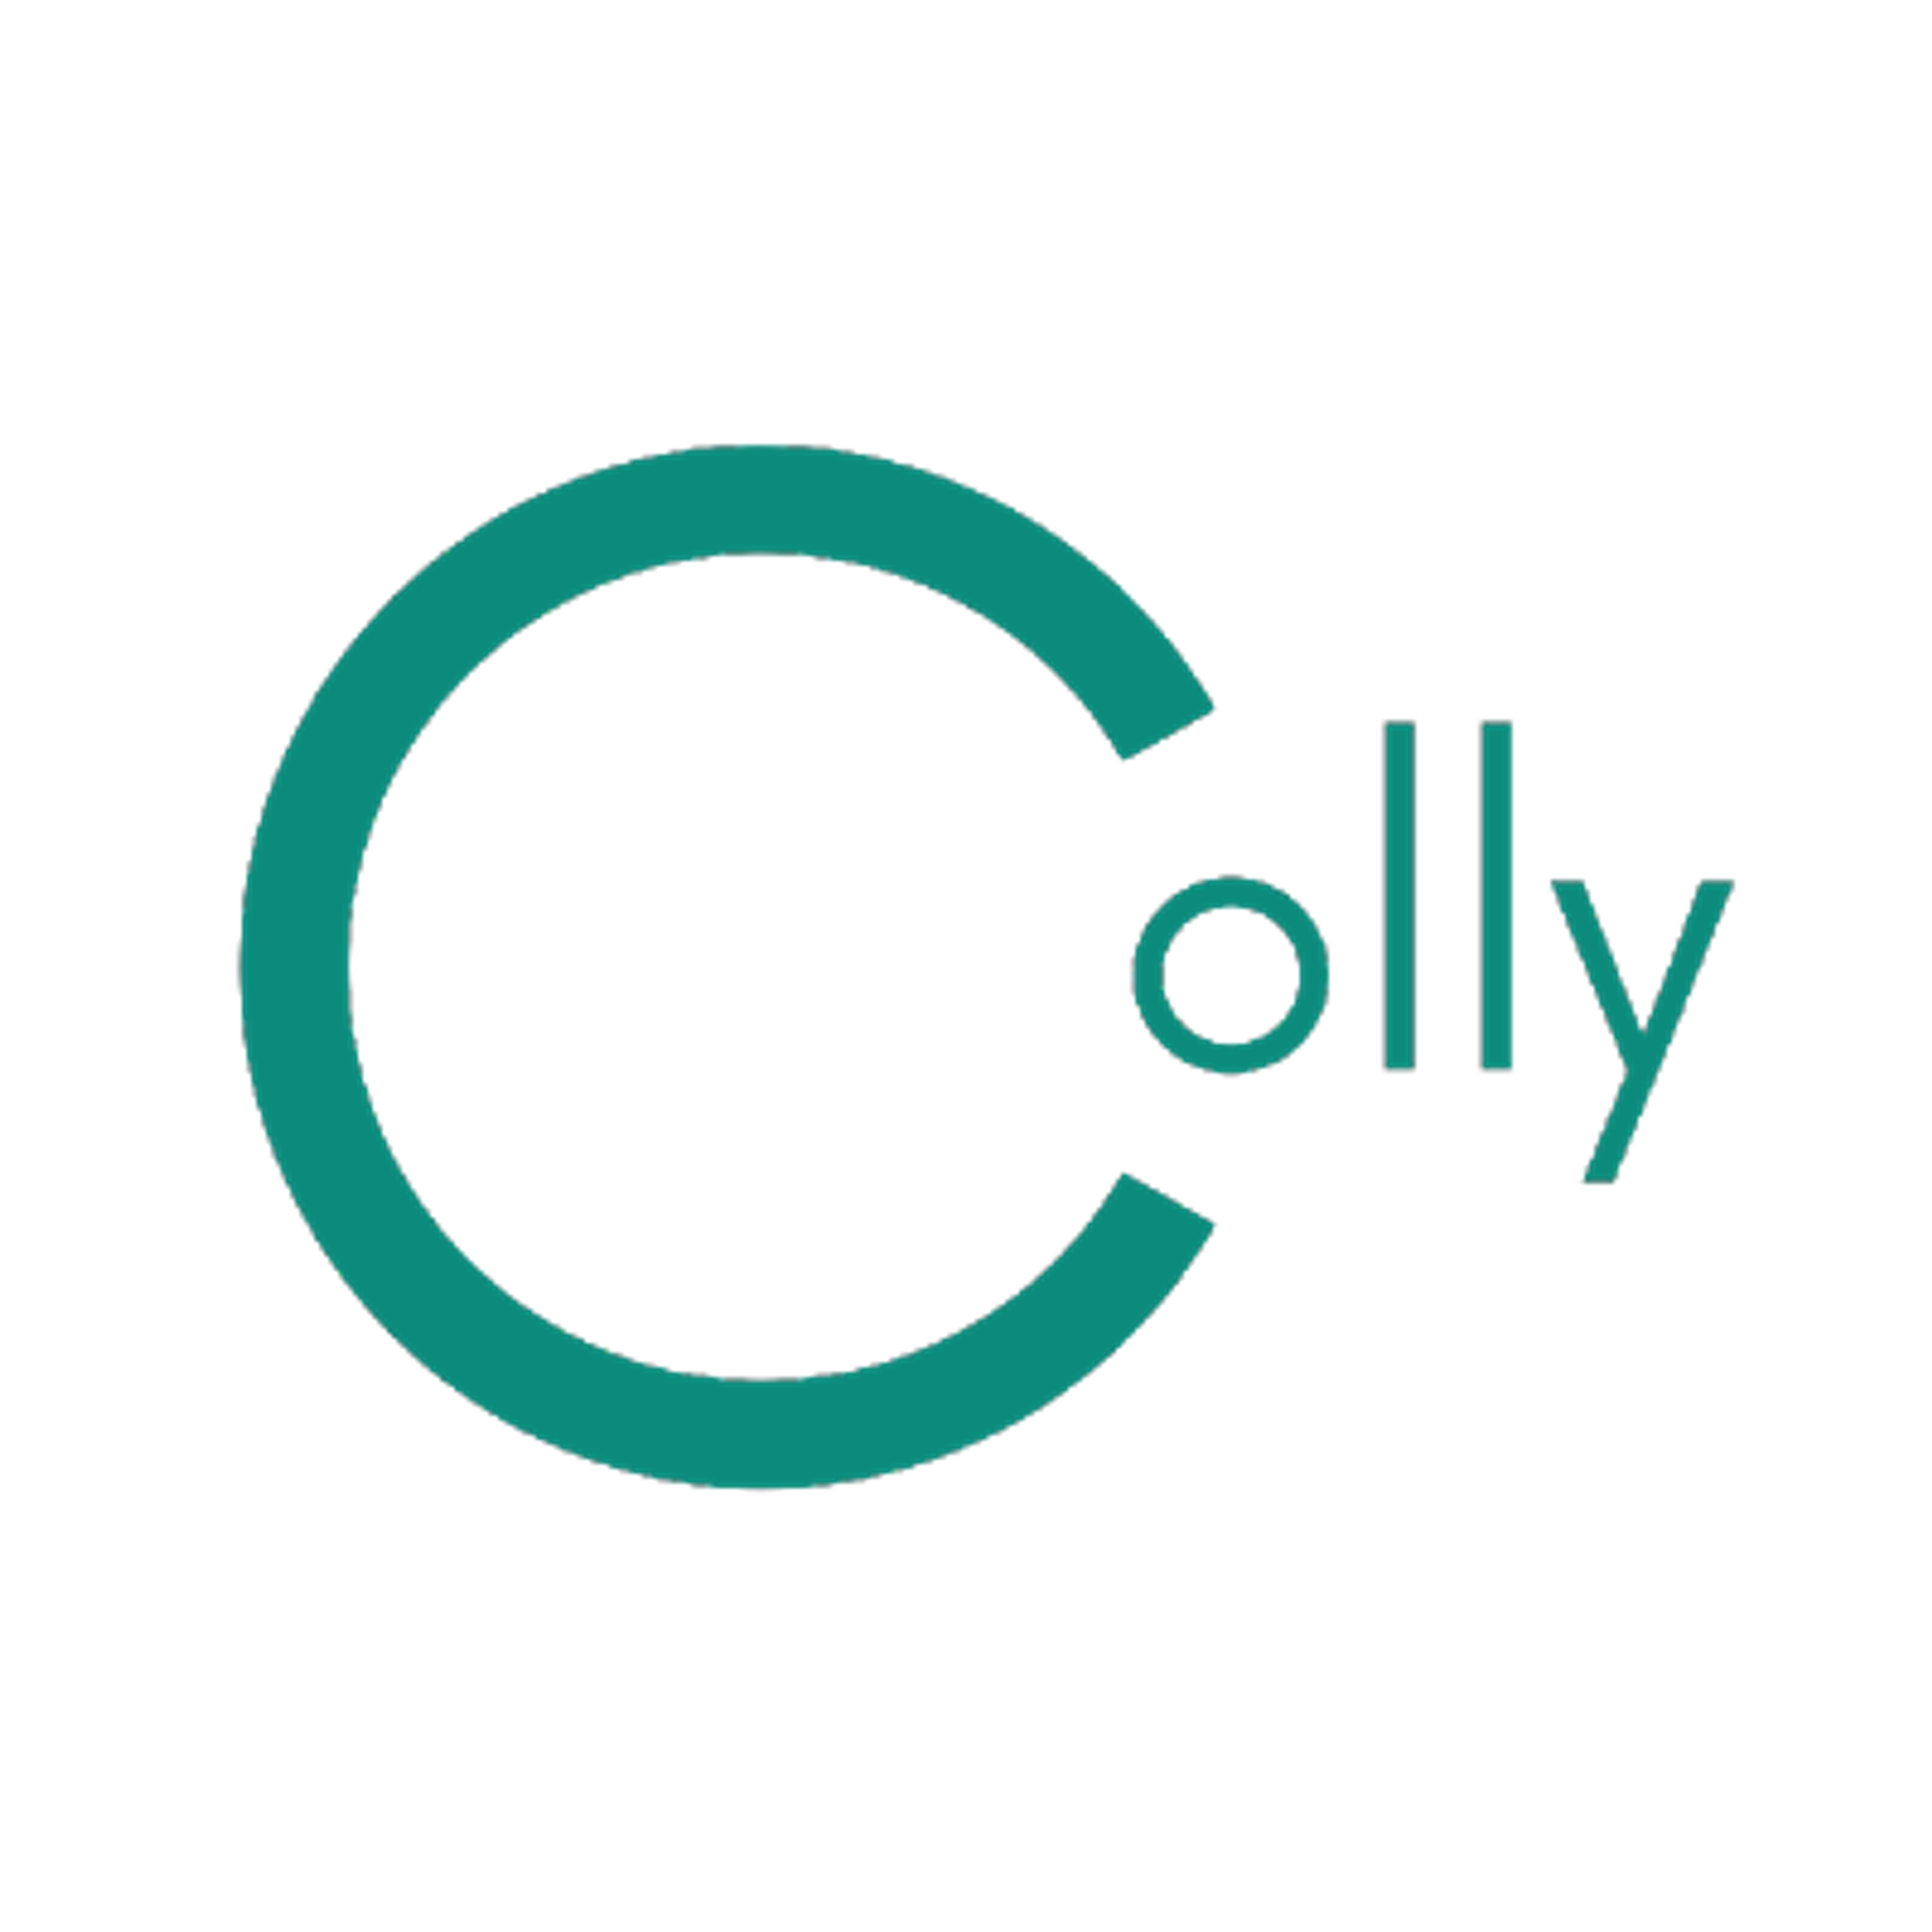 gocolly/colly